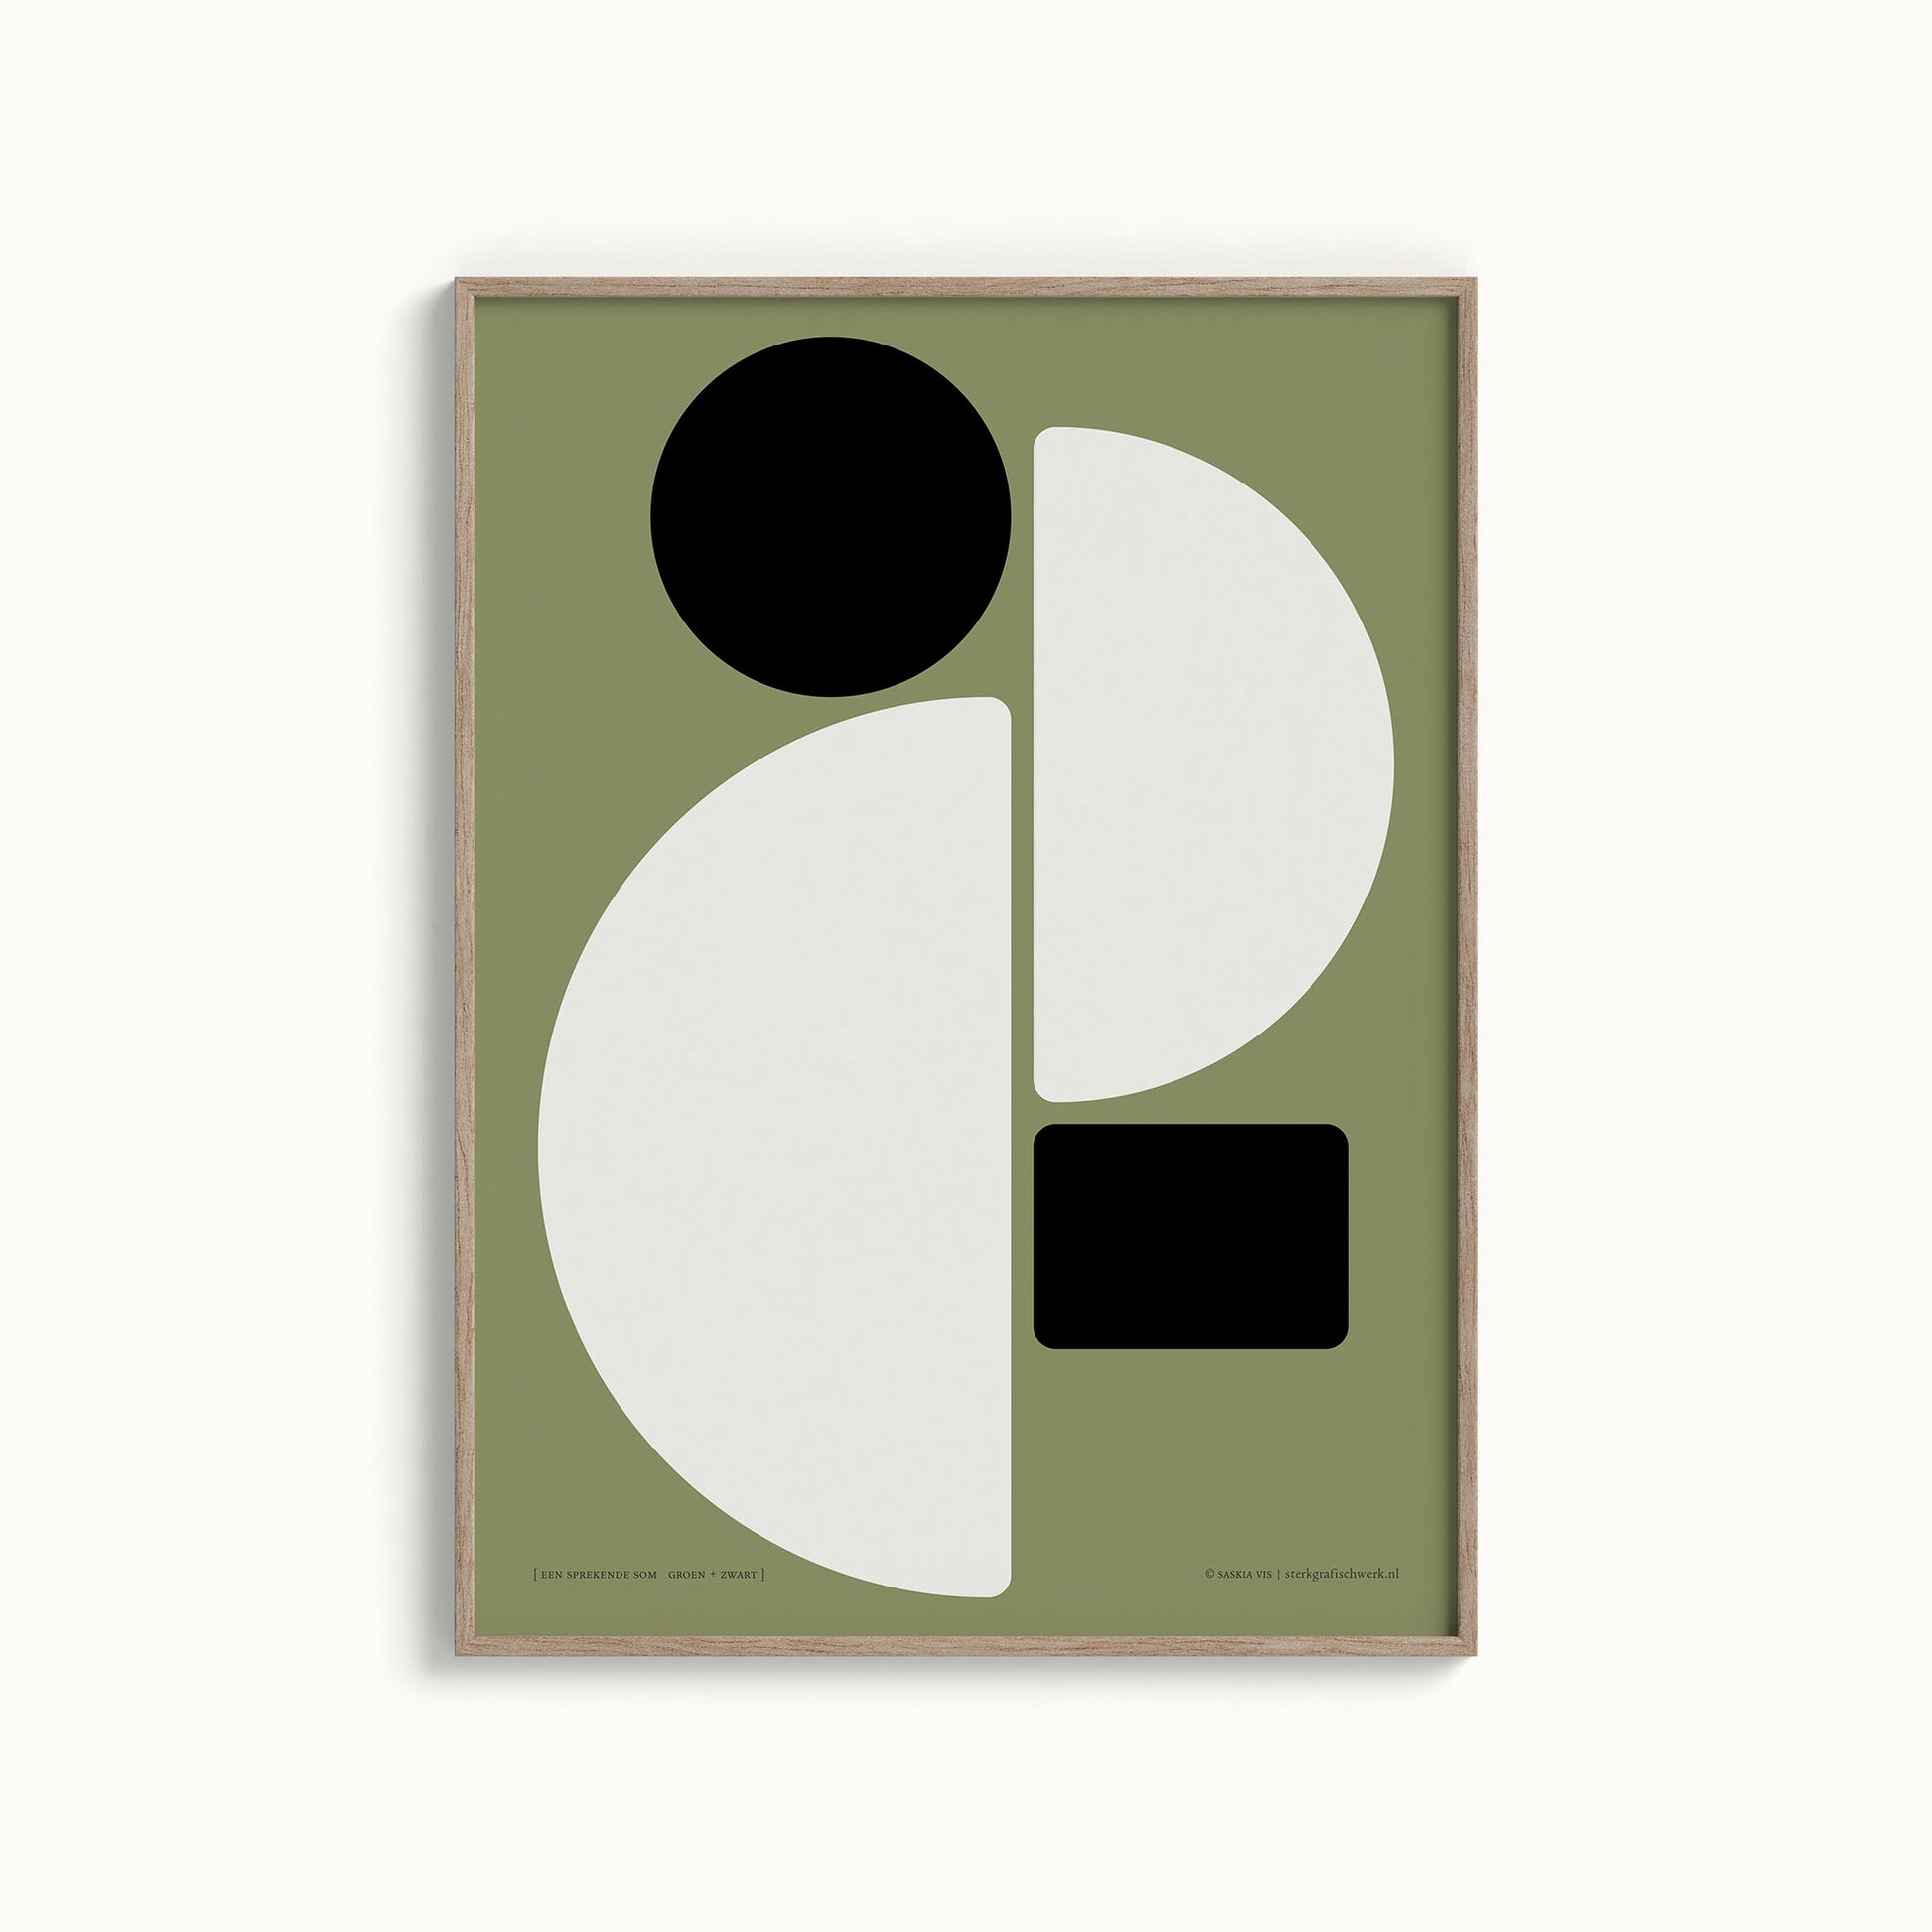 Productafbeelding, poster "een sprekende som groen+zwart", foto impressie 4, in een houten lijst hangend aan een creme-witte wand